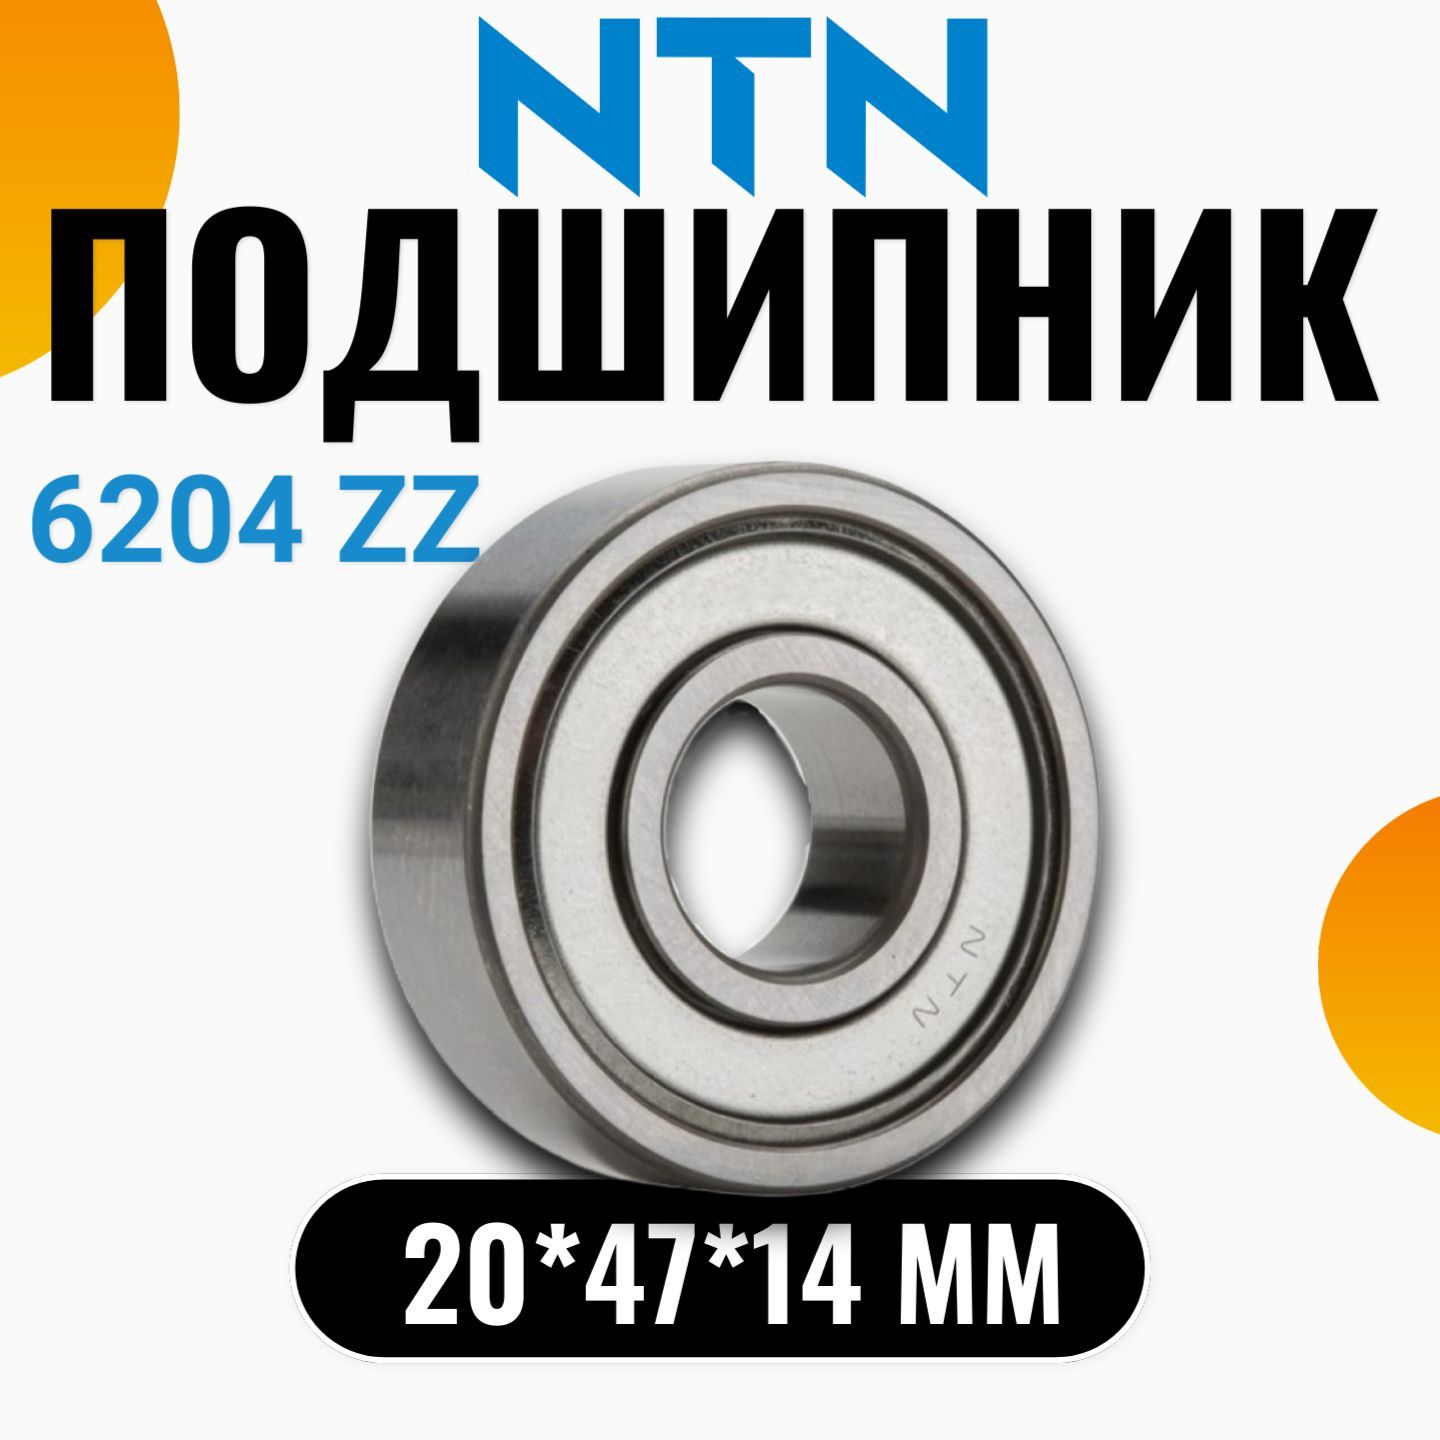 NTNПодшипникуниверсальный,диаметр20мм,1шт.,арт.6204ZZC3362NTN